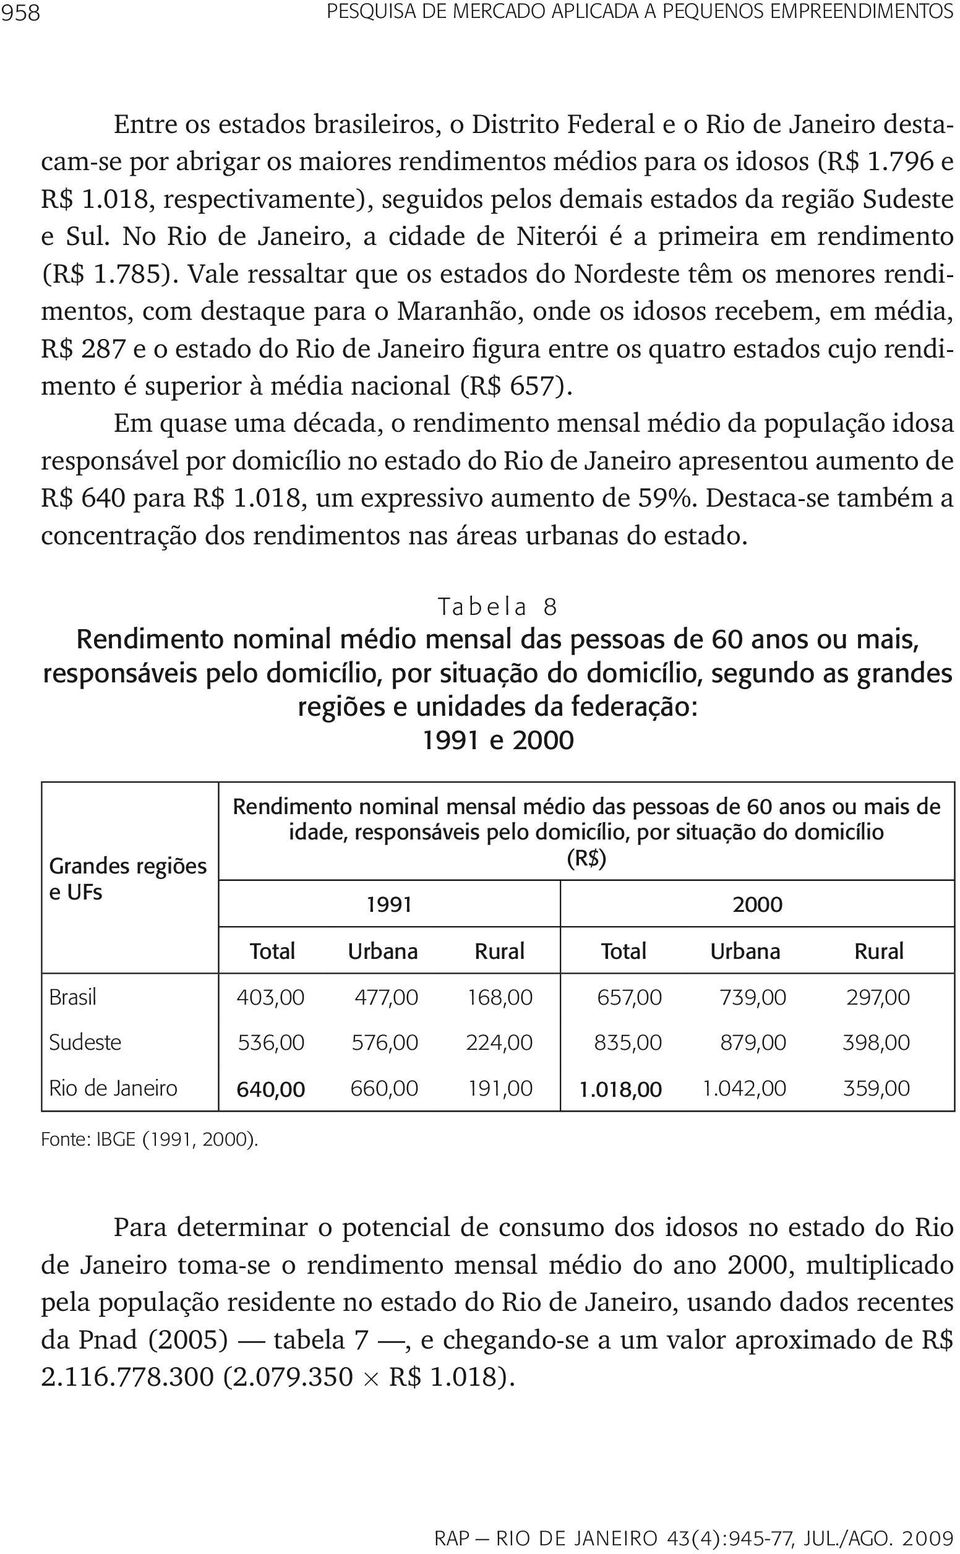 Vale ressaltar que os estados do Nordeste têm os menores rendimentos, com destaque para o Maranhão, onde os idosos recebem, em média, R$ 287 e o estado do Rio de Janeiro figura entre os quatro